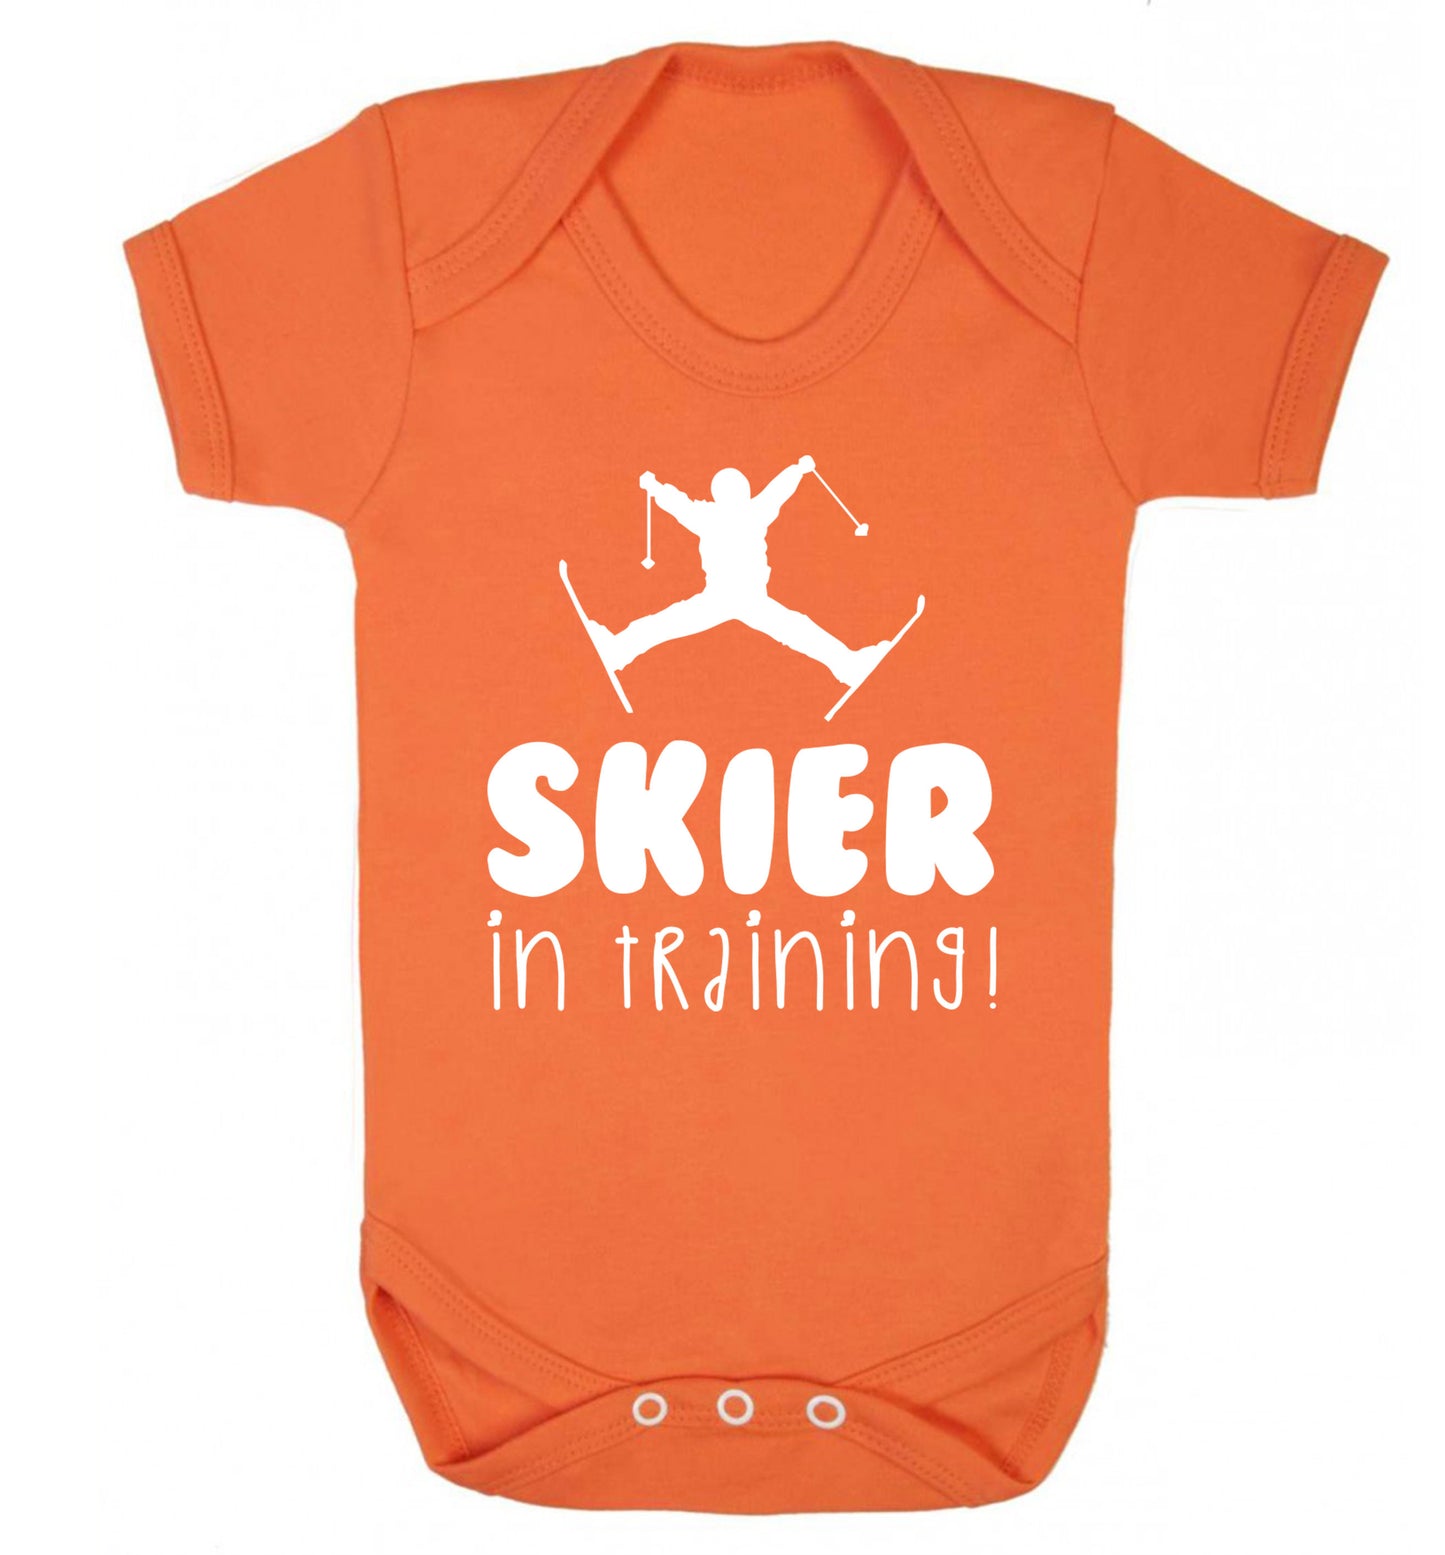 Skier in training Baby Vest orange 18-24 months